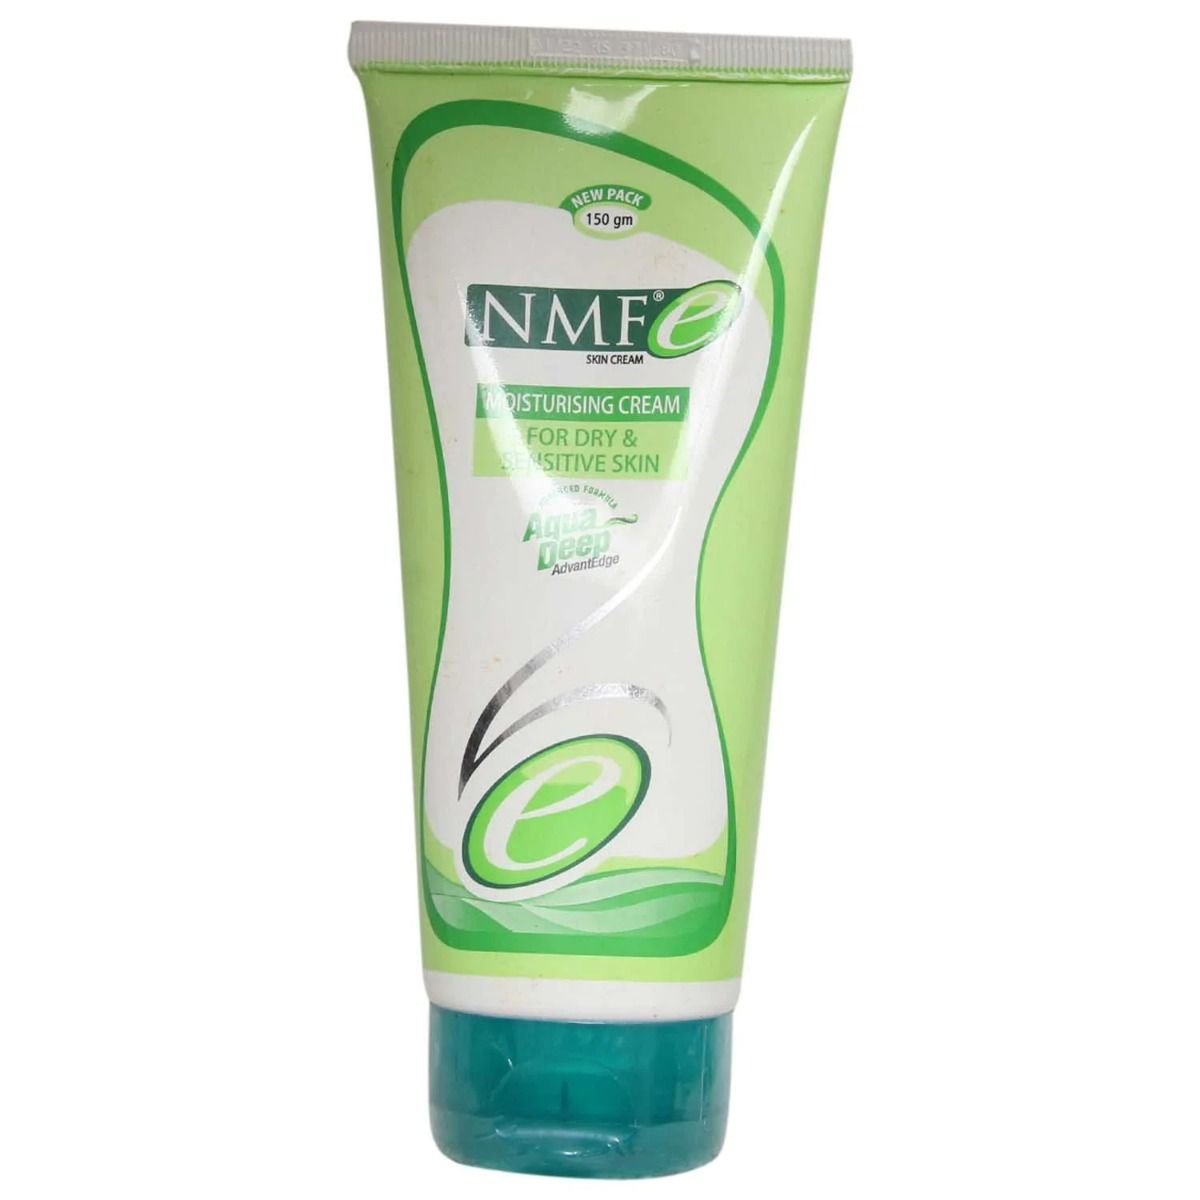 NMF e Skin Cream 150 gm, Pack of 1 